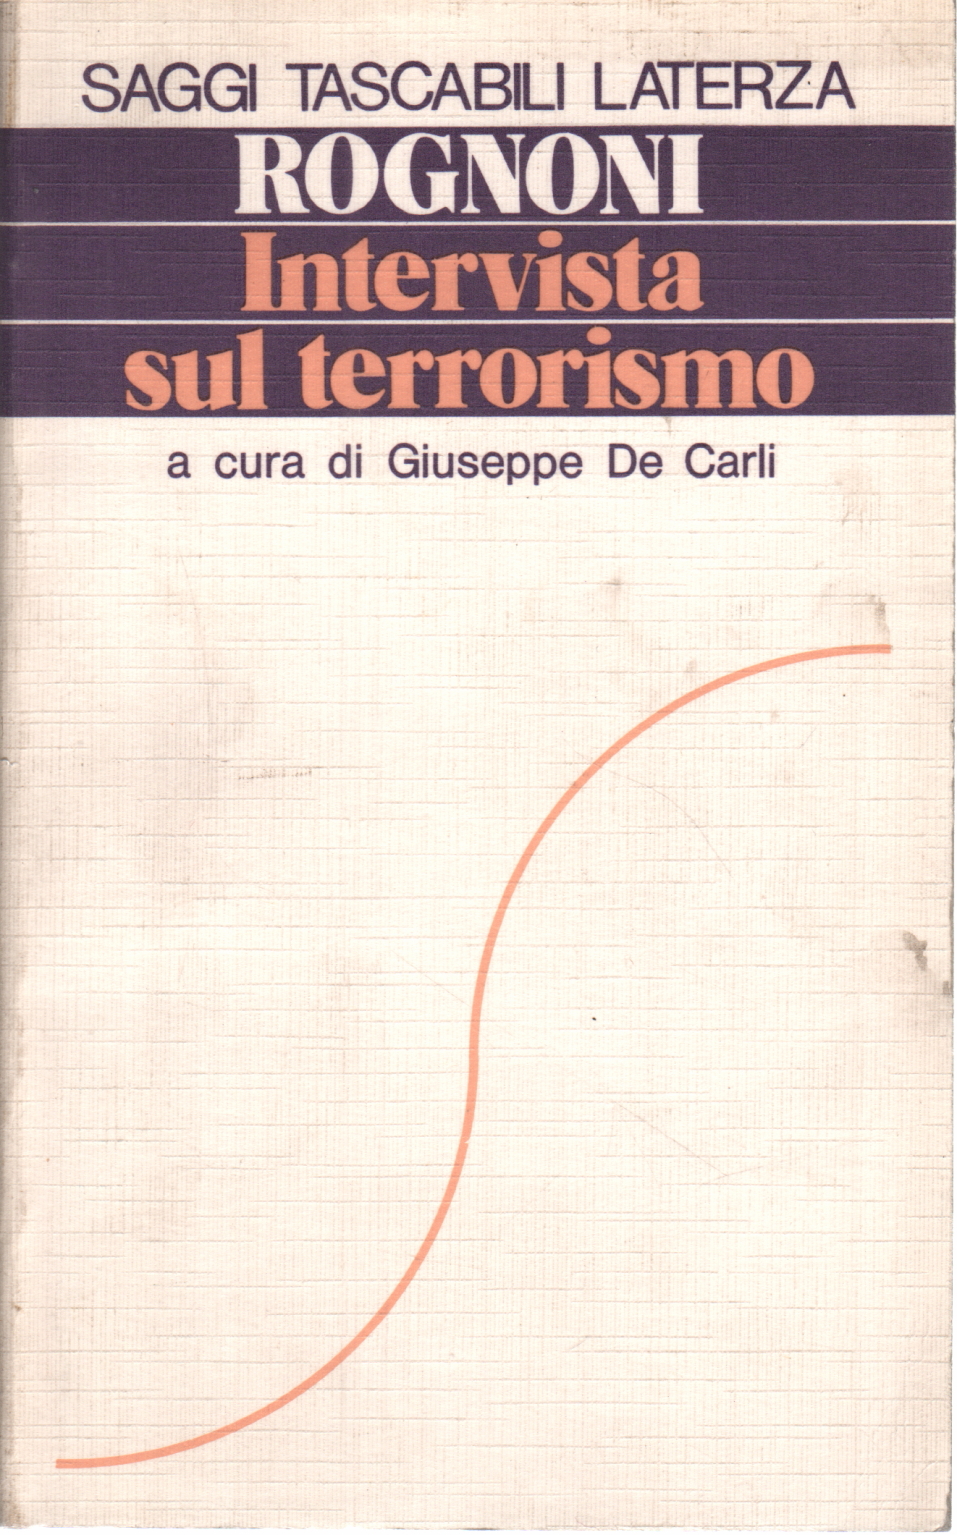 Interview zum Thema Terrorismus